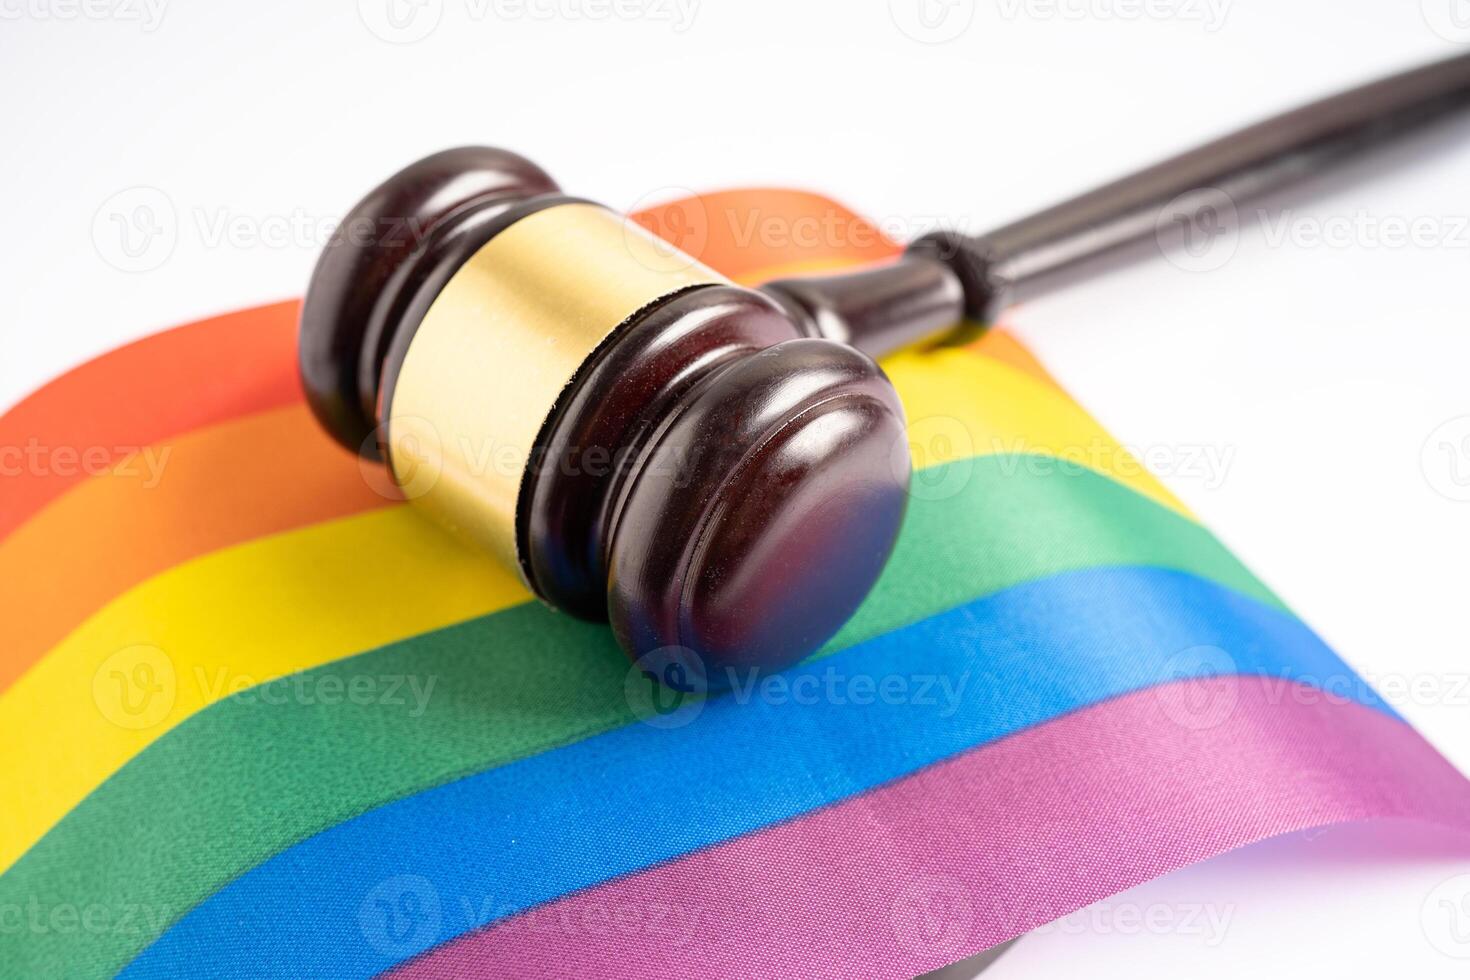 marteau pour juge avocat sur le drapeau arc-en-ciel, symbole du mois de la fierté lgbt célébrant chaque année en juin les droits des homosexuels, lesbiennes, bisexuels, transgenres et humains. photo